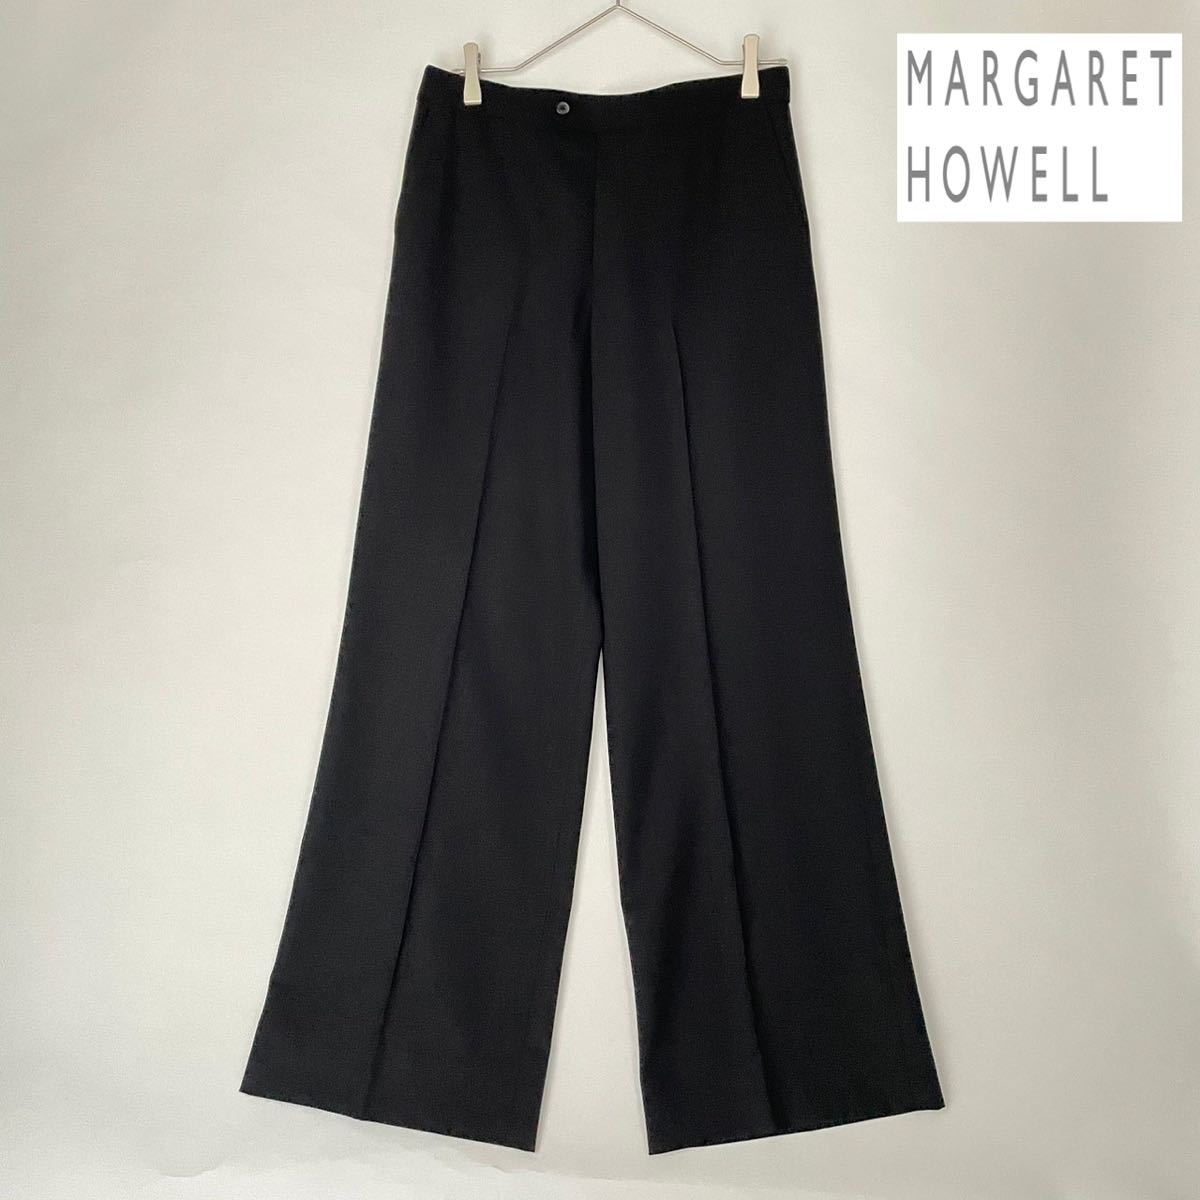 MARGARET HOWELL マーガレットハウエル スラックス センタープリーツ ワイド パンツ ウール100% ゆったり 大きめ 黒 ブラック size 3